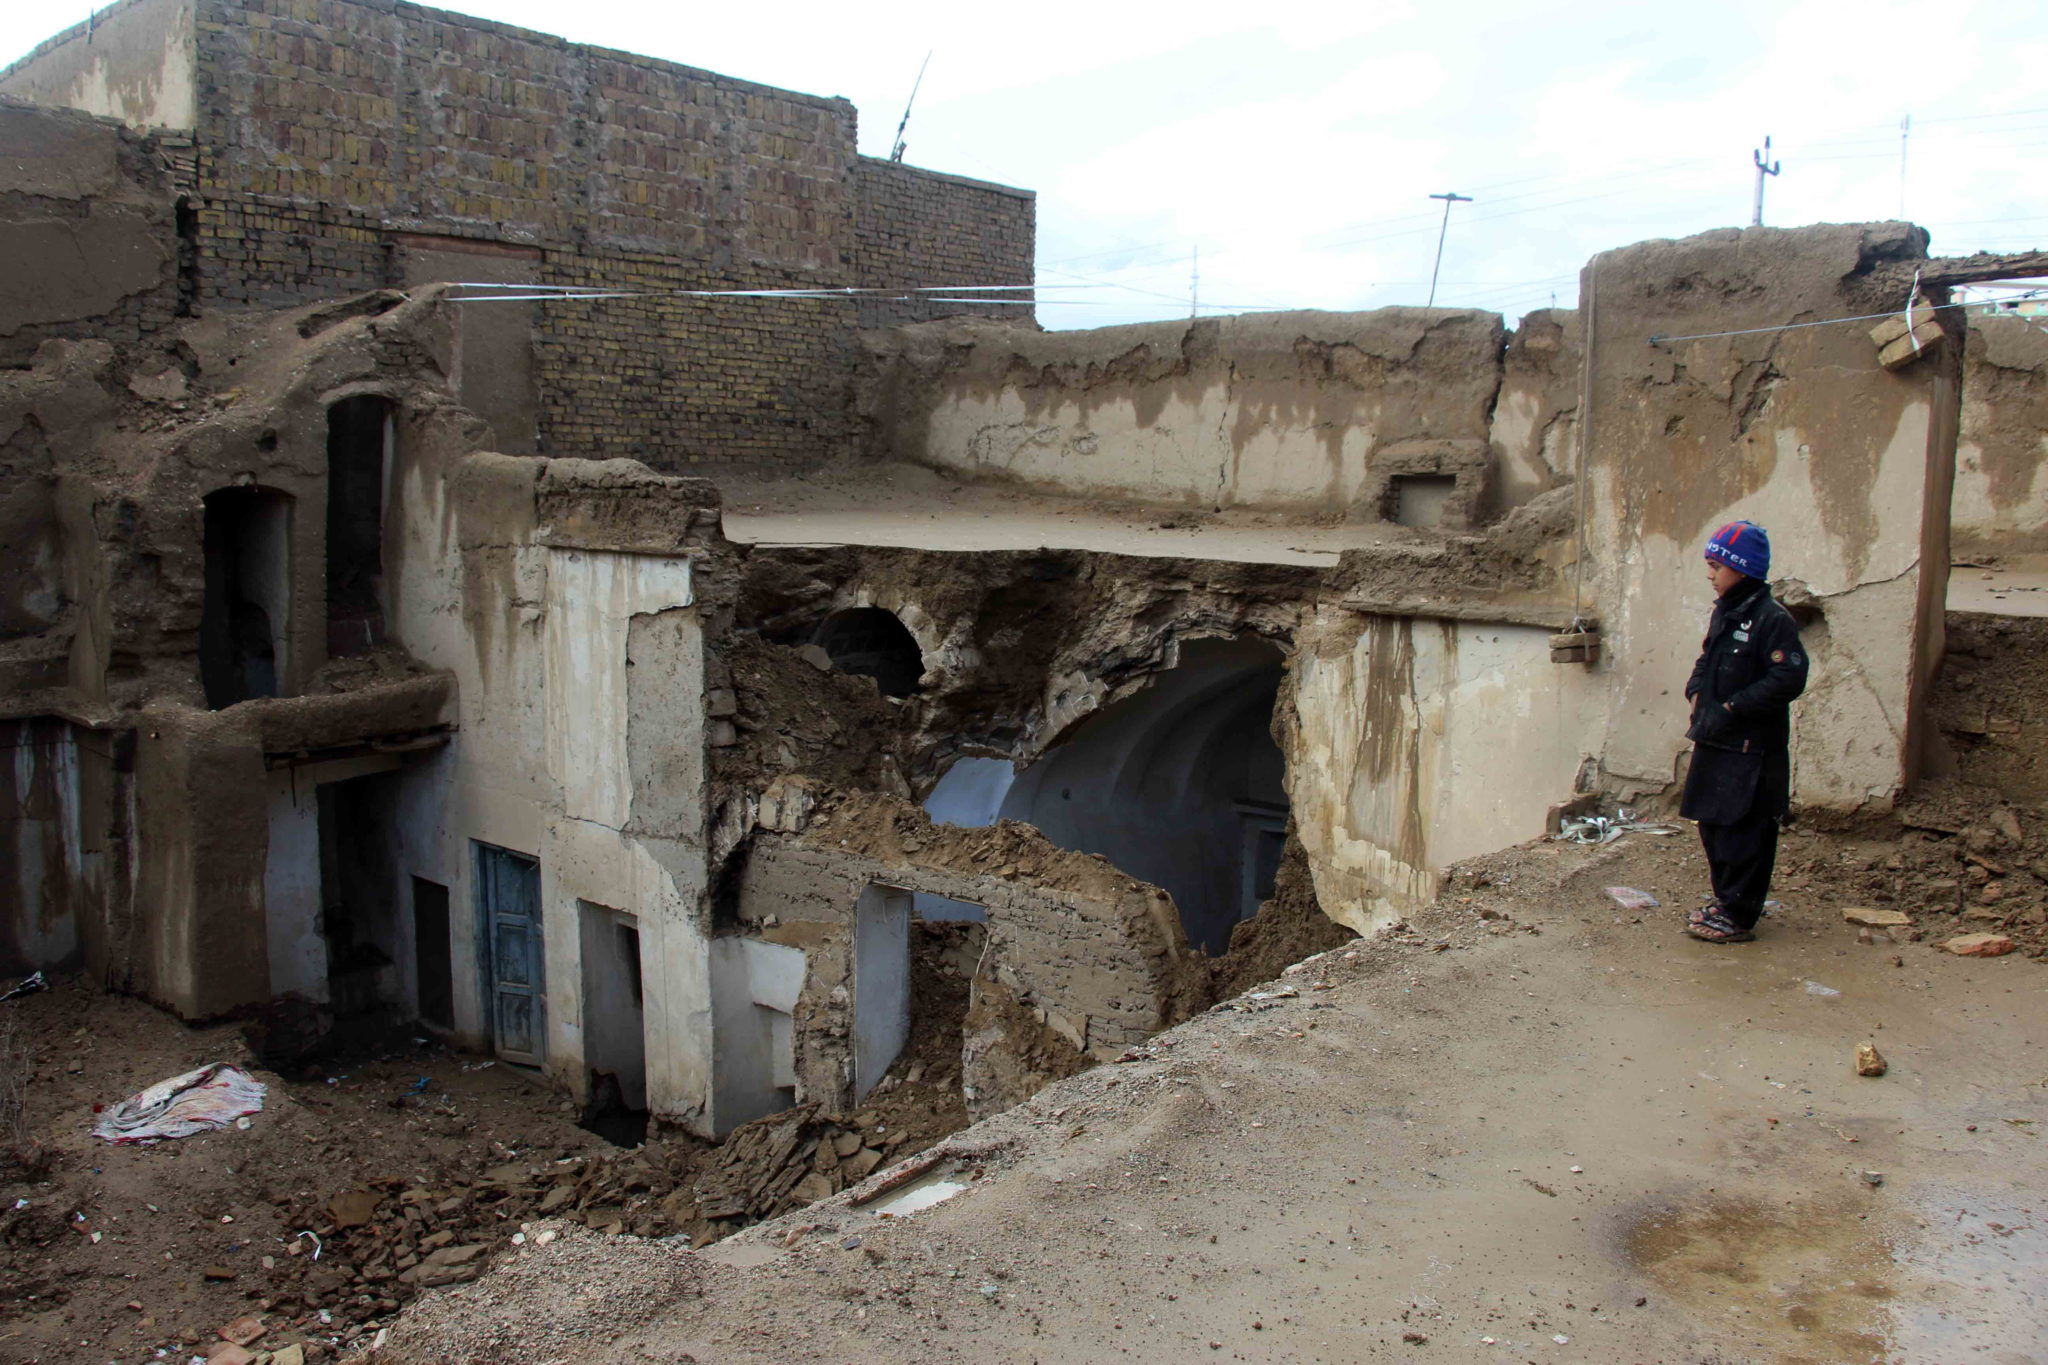 Kandahar, południowy Afganistan: zniszczenia po silnych ulewach, które spowodowały liczne podtopienia i powodzenia, fot. MUHAMMAD SADIQ, PAP/EPA 